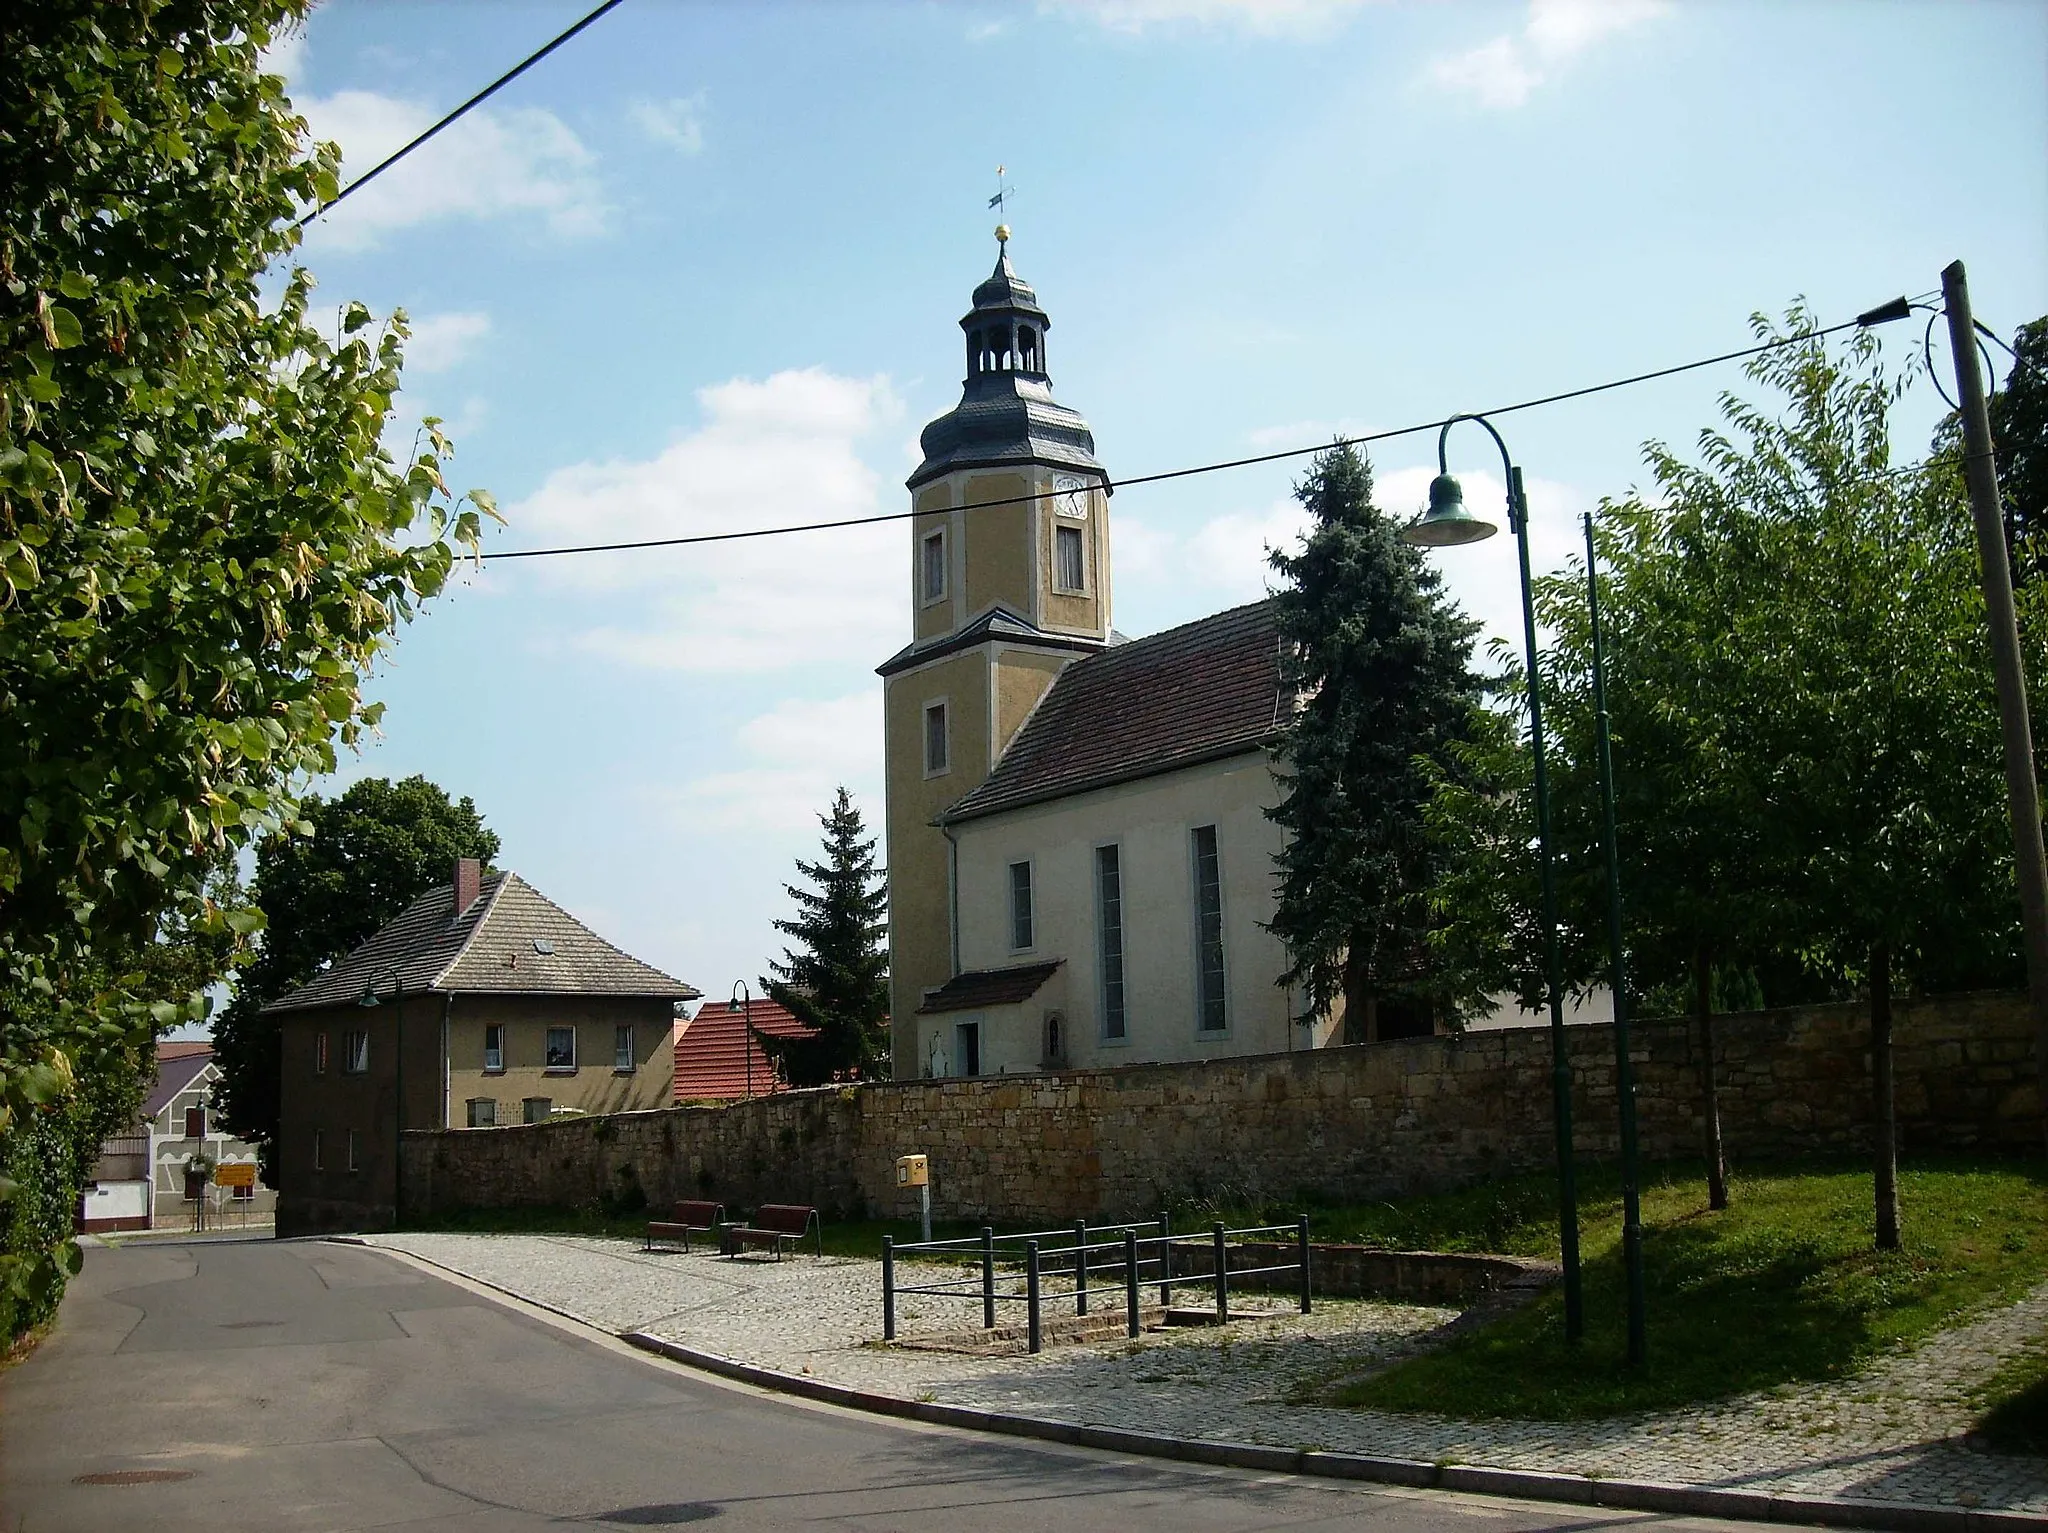 Photo showing: Church of the village of Neidschütz (Naumburg, district of Burgenlandkreis, Saxony-Anhalt9